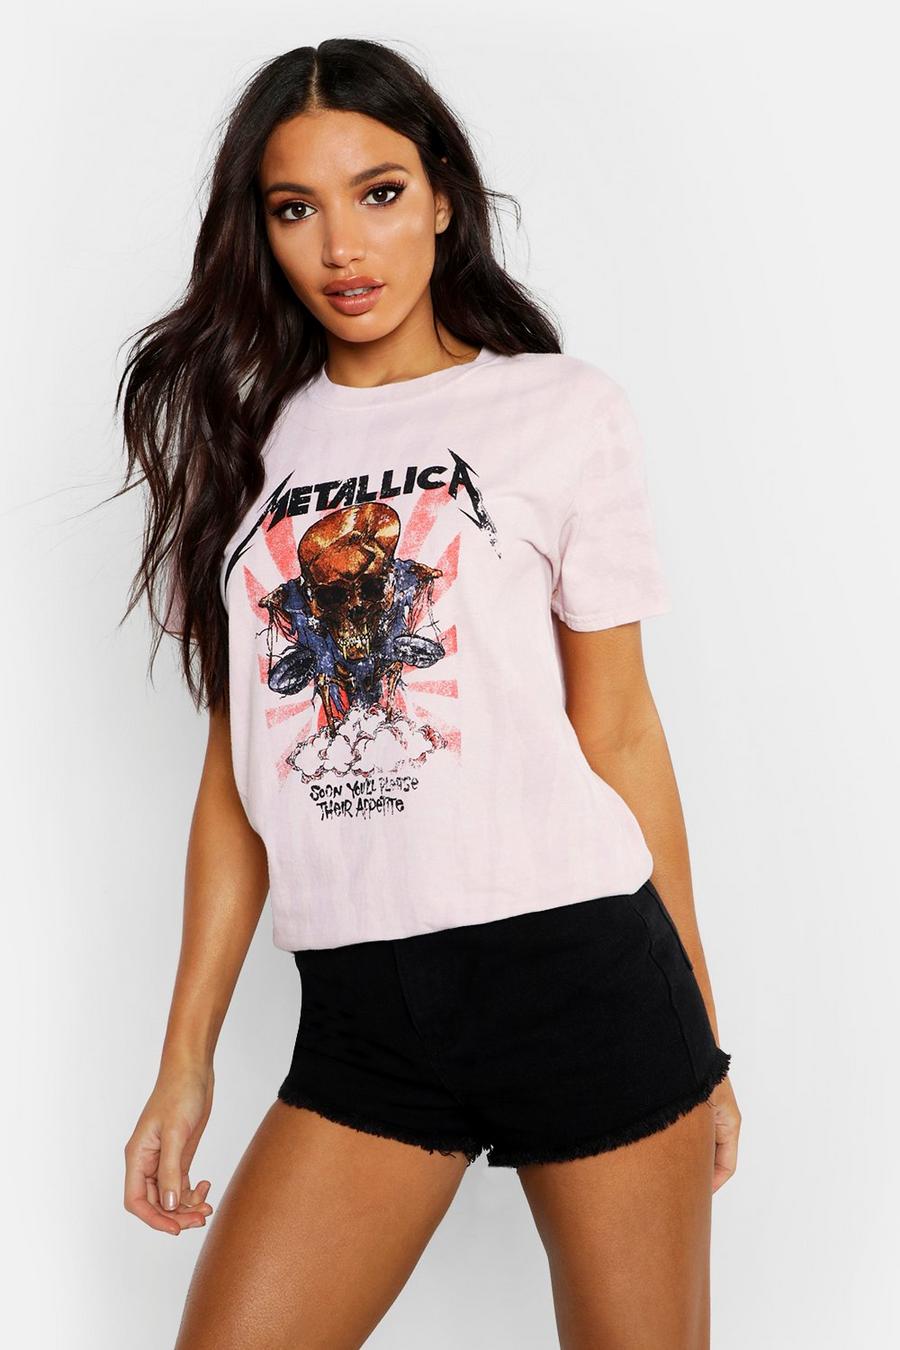 Camiseta de Metallica lavada, Pink image number 1